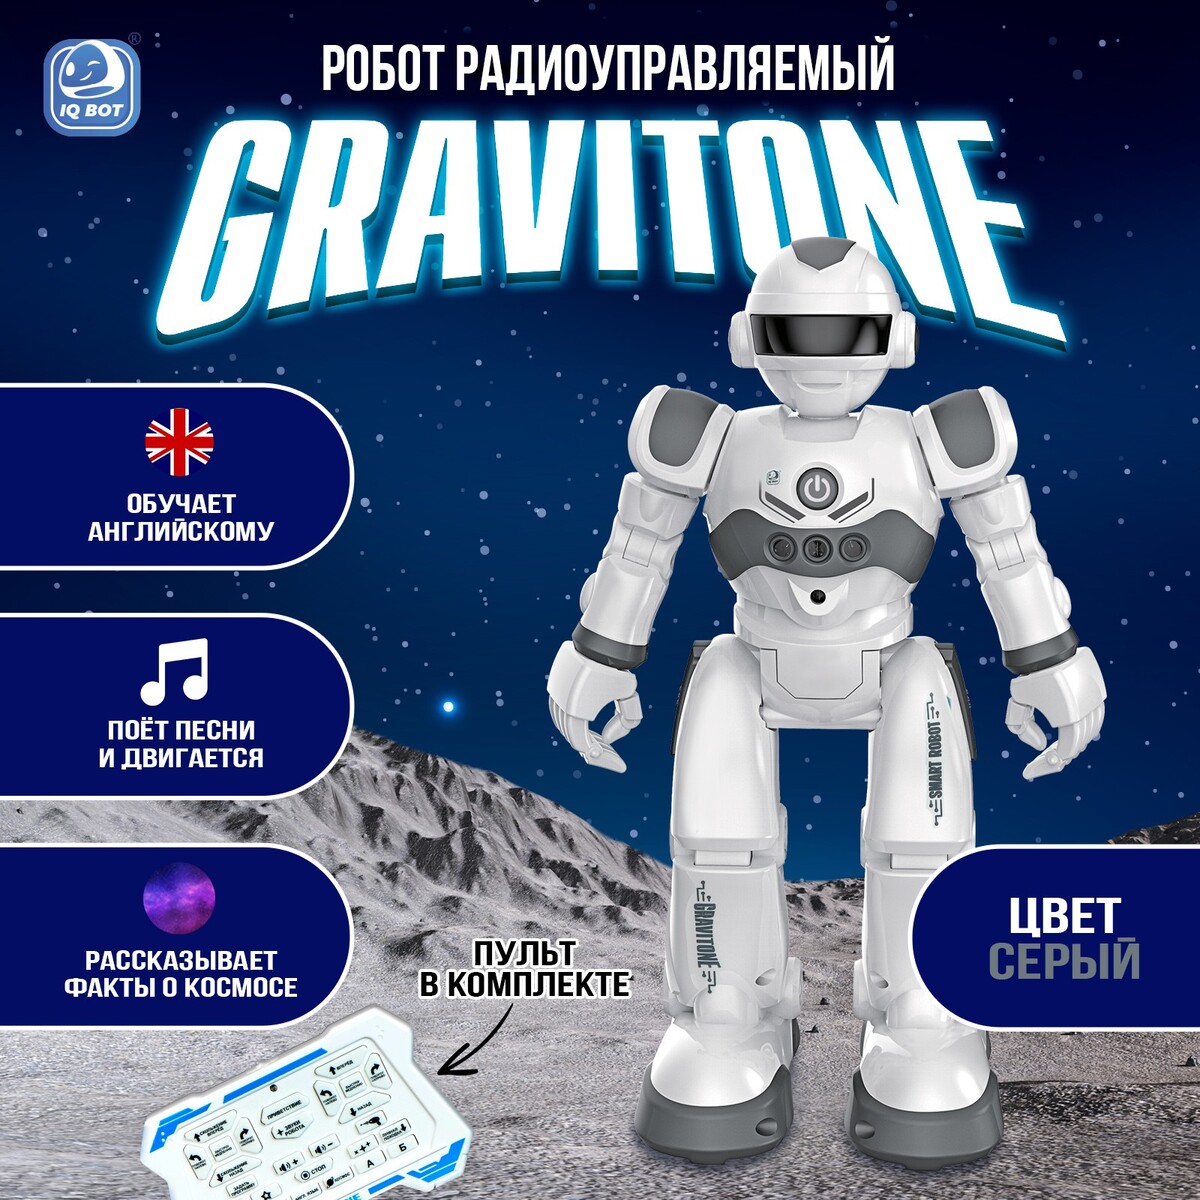 Робот радиоуправляемый iq bot gravitone, русское озвучивание, цвет серый эстонско русское культурное пространство